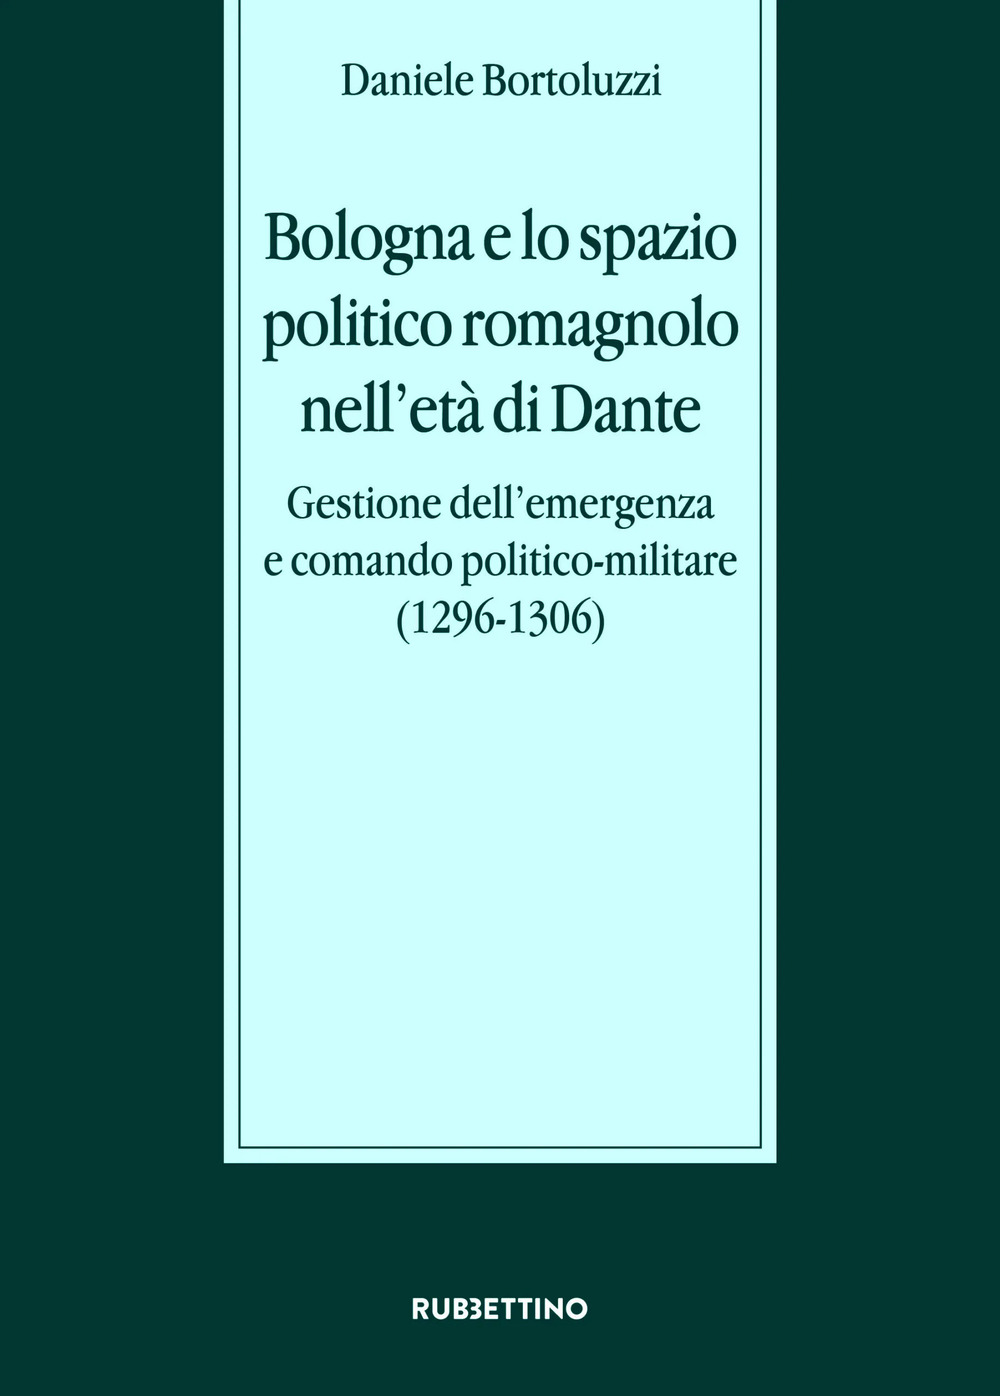 Bologna e lo spazio politico romagnolo nell'età di Dante. Gestione dell'emergenza e comando politico-militare (1296-1306)